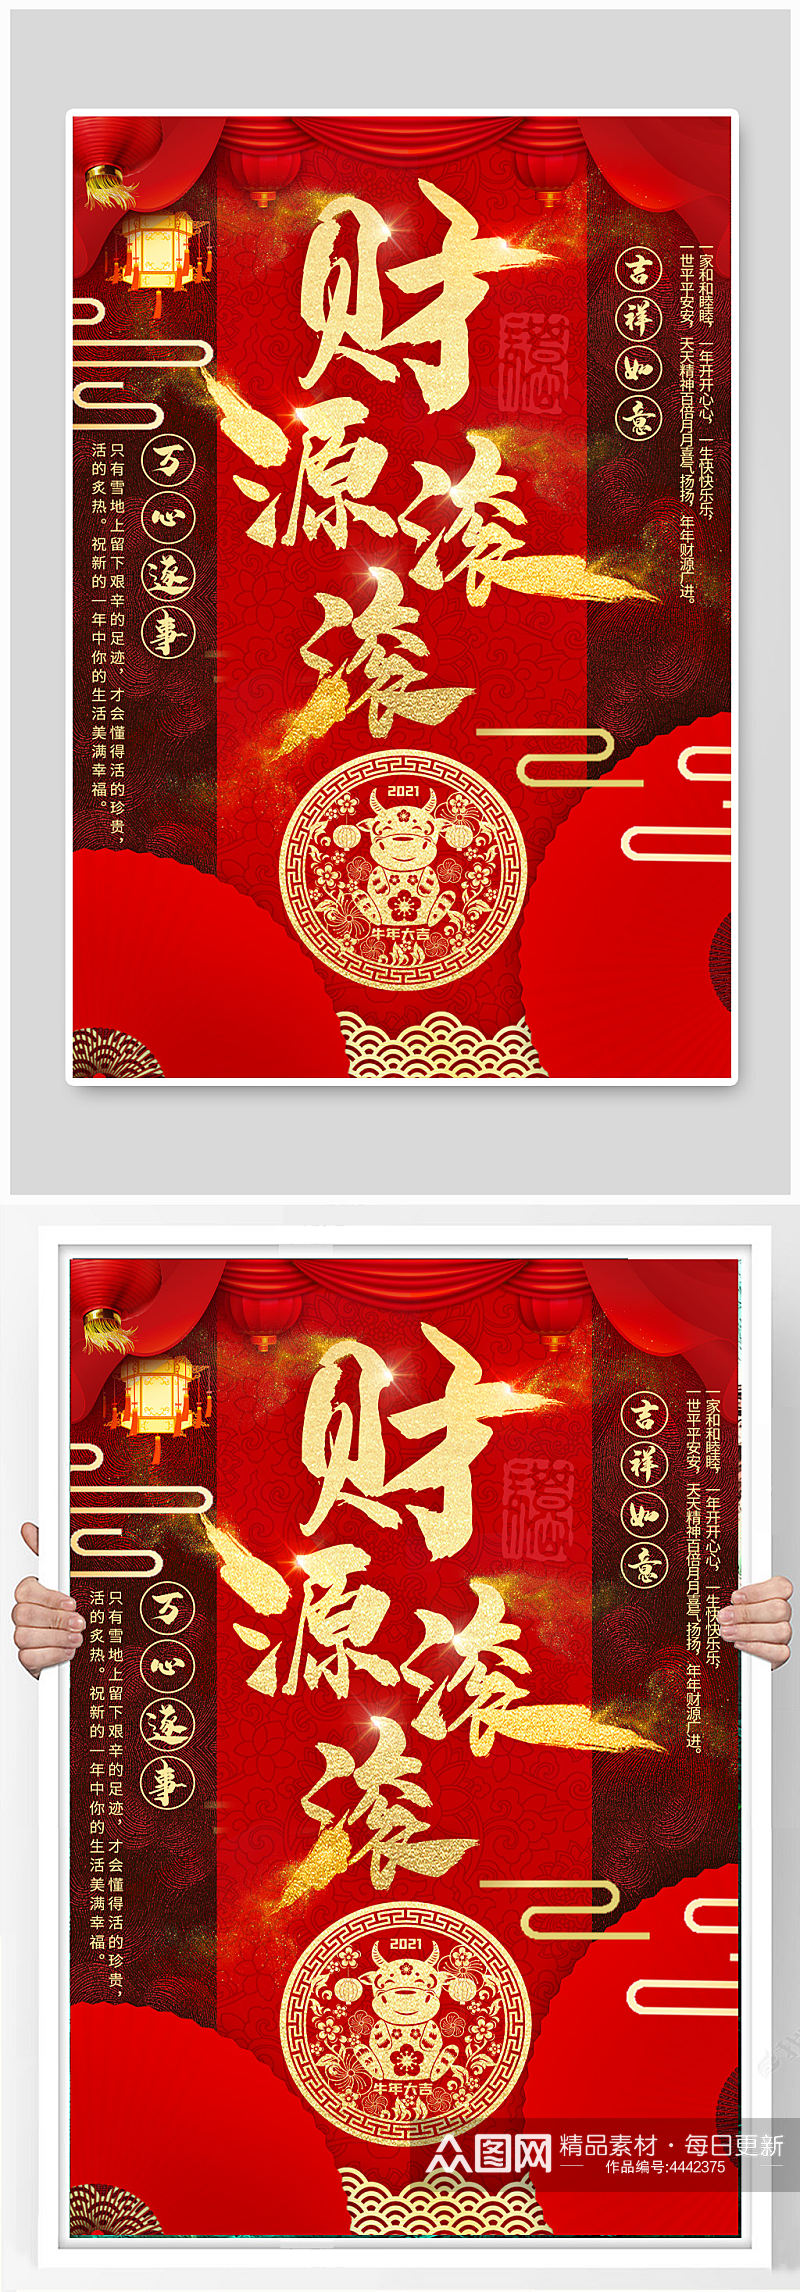 温馨春节节日海报设计素材